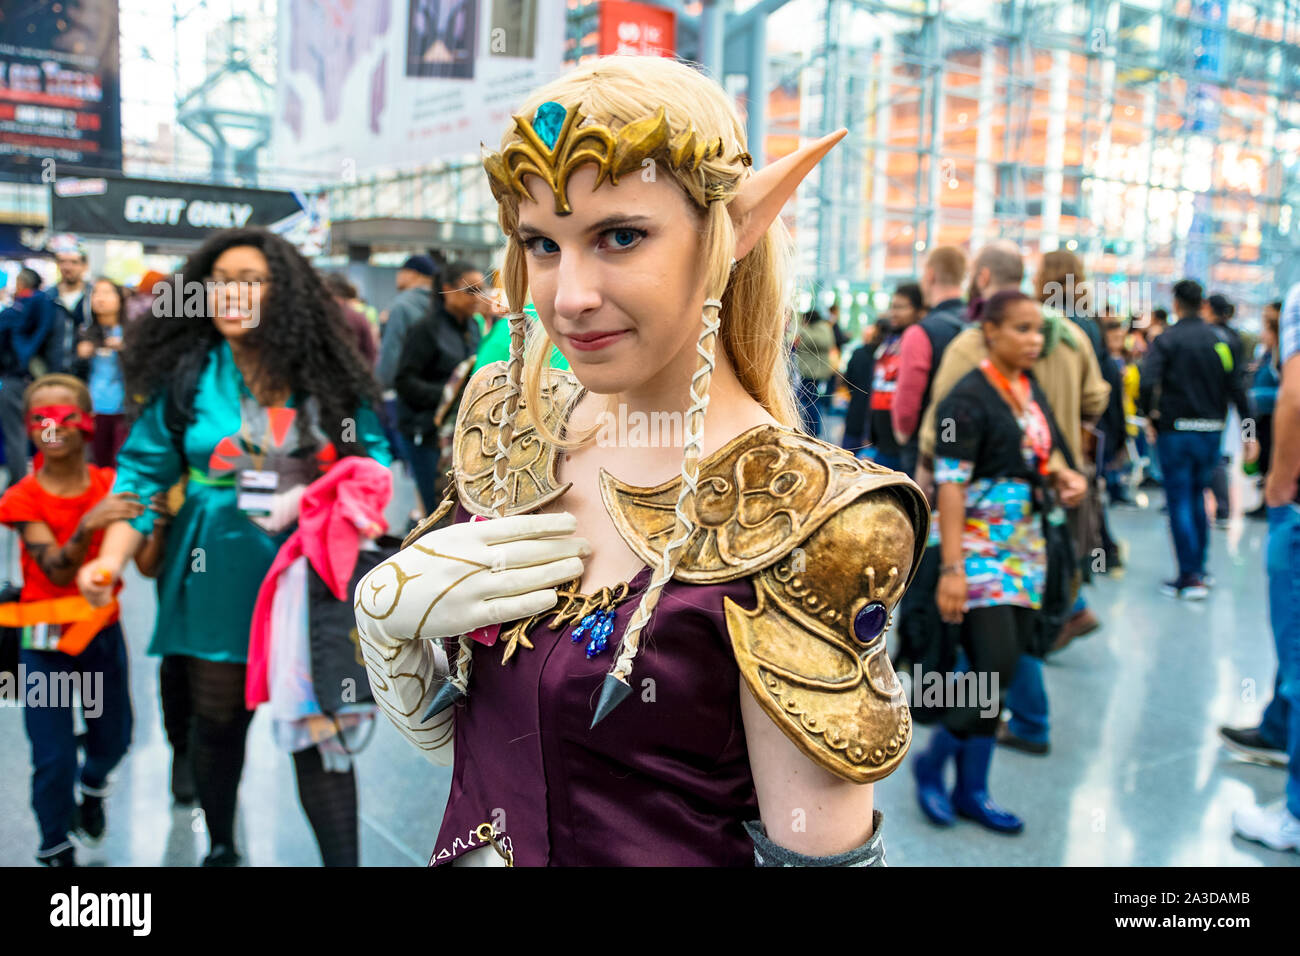 Jacob K. Javits Convention Center, New York New York - Oktober 9, 2016: Eine schöne cosplayer als Prinzessin Zelda gekleidet. Stockfoto